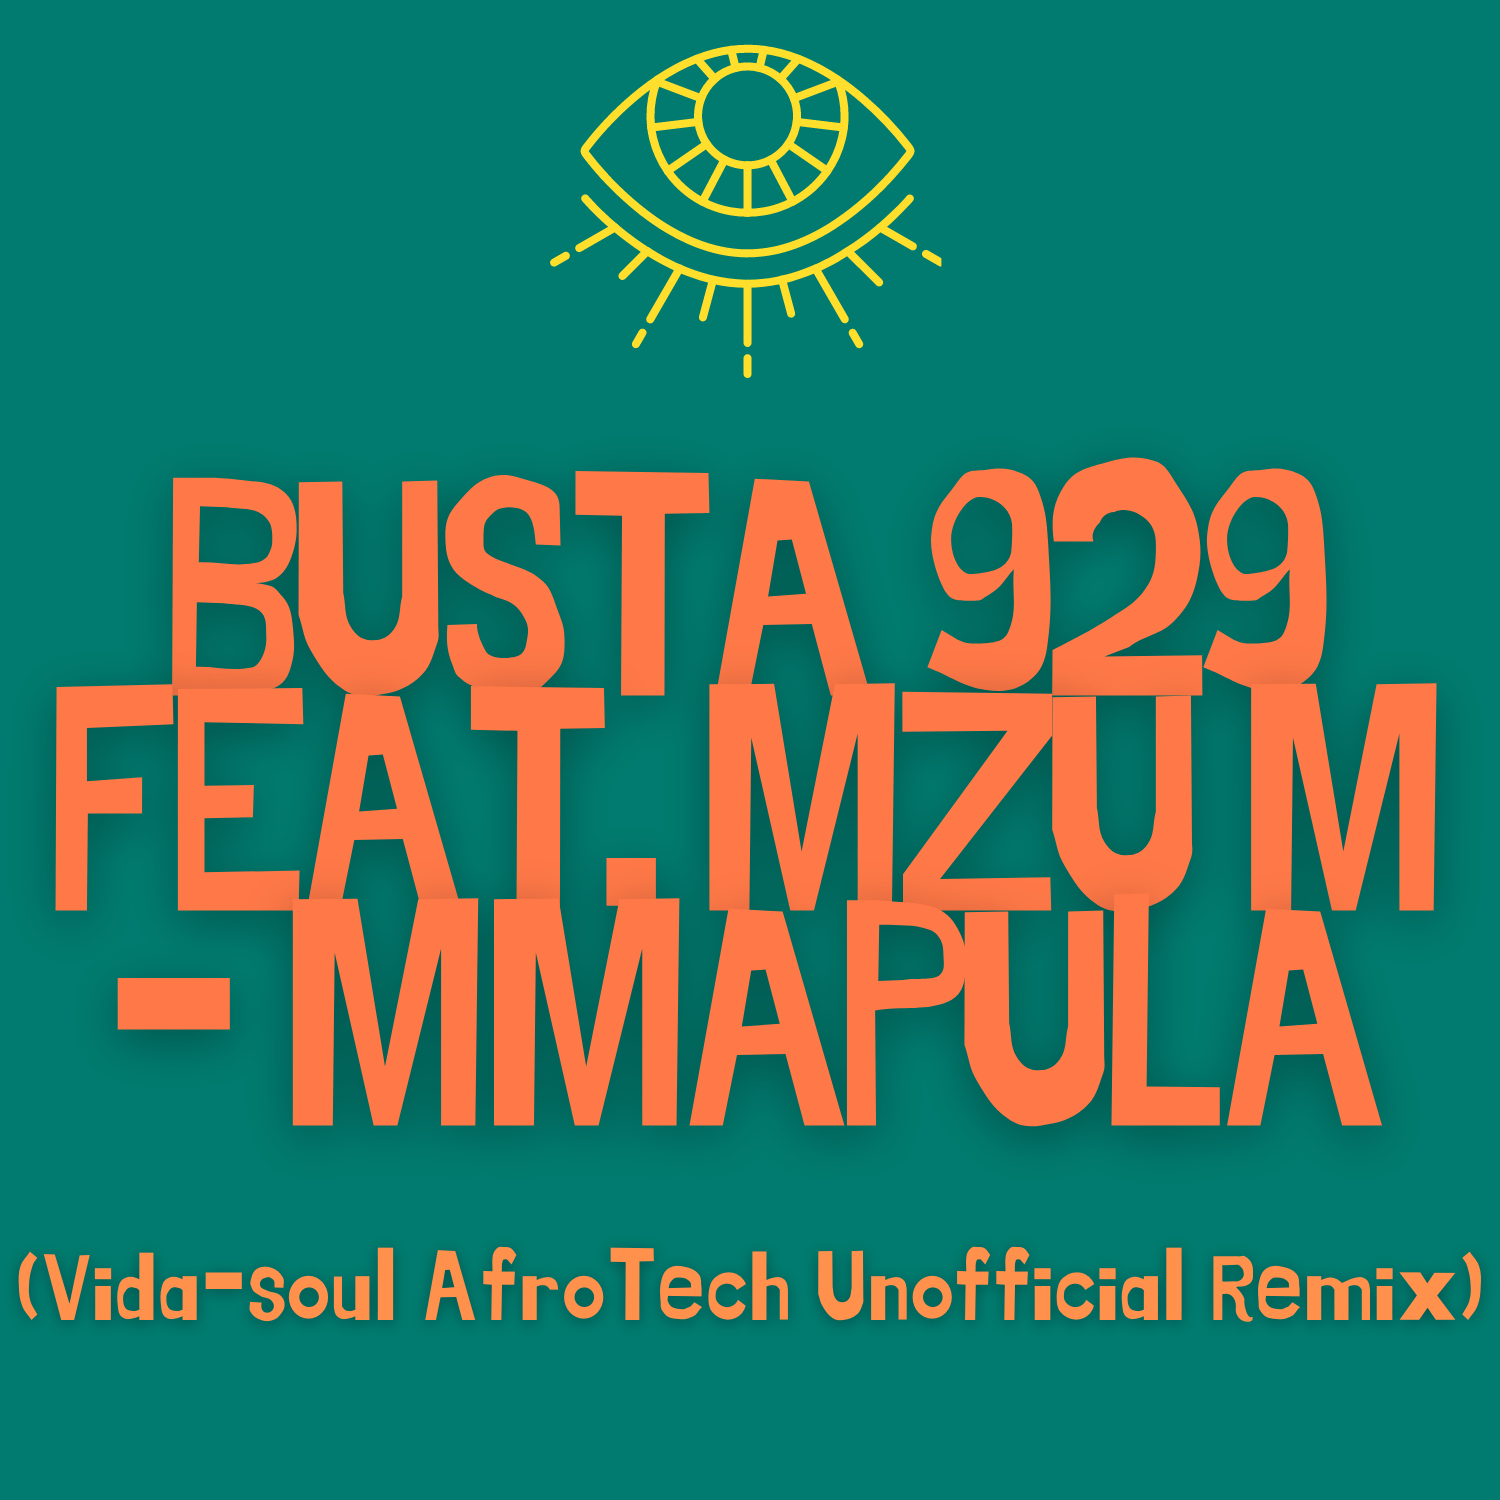 Busta 929 ft. Mzu M Mmapula (Vida-soul AfroTech Unofficial Remix)